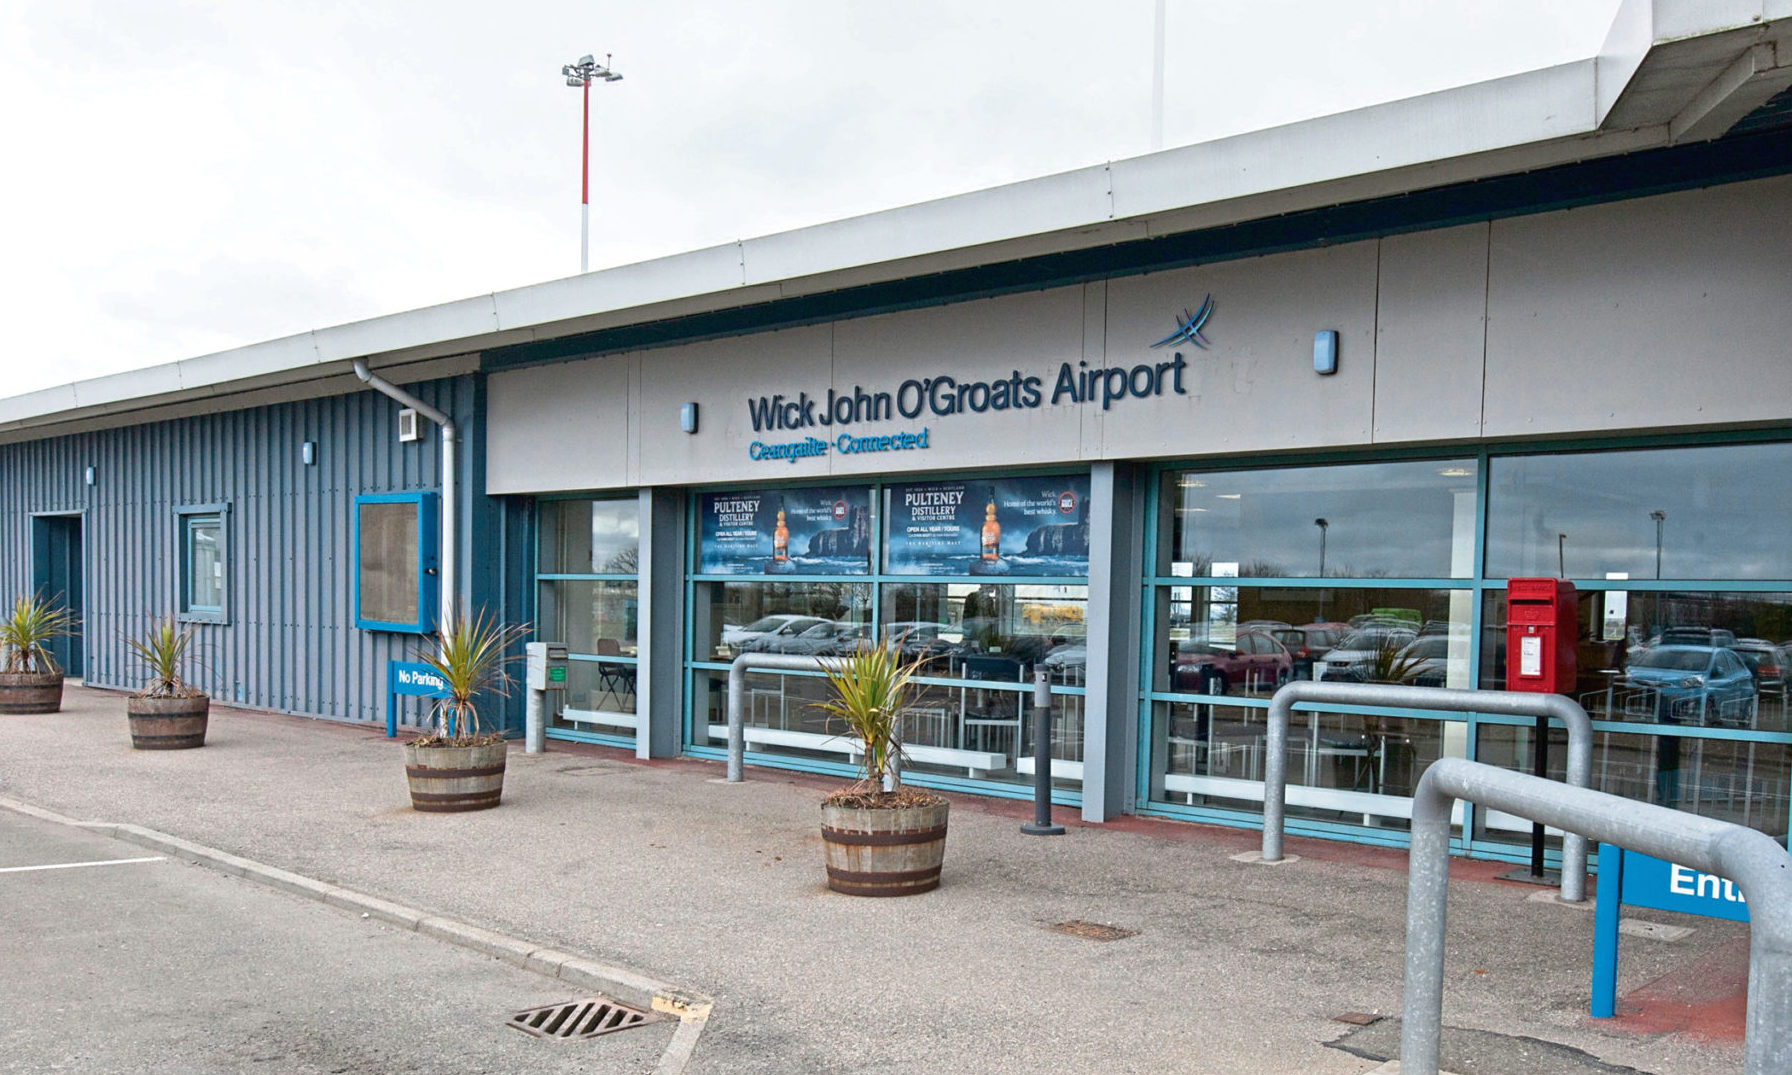 Wick John O'Groats Airport